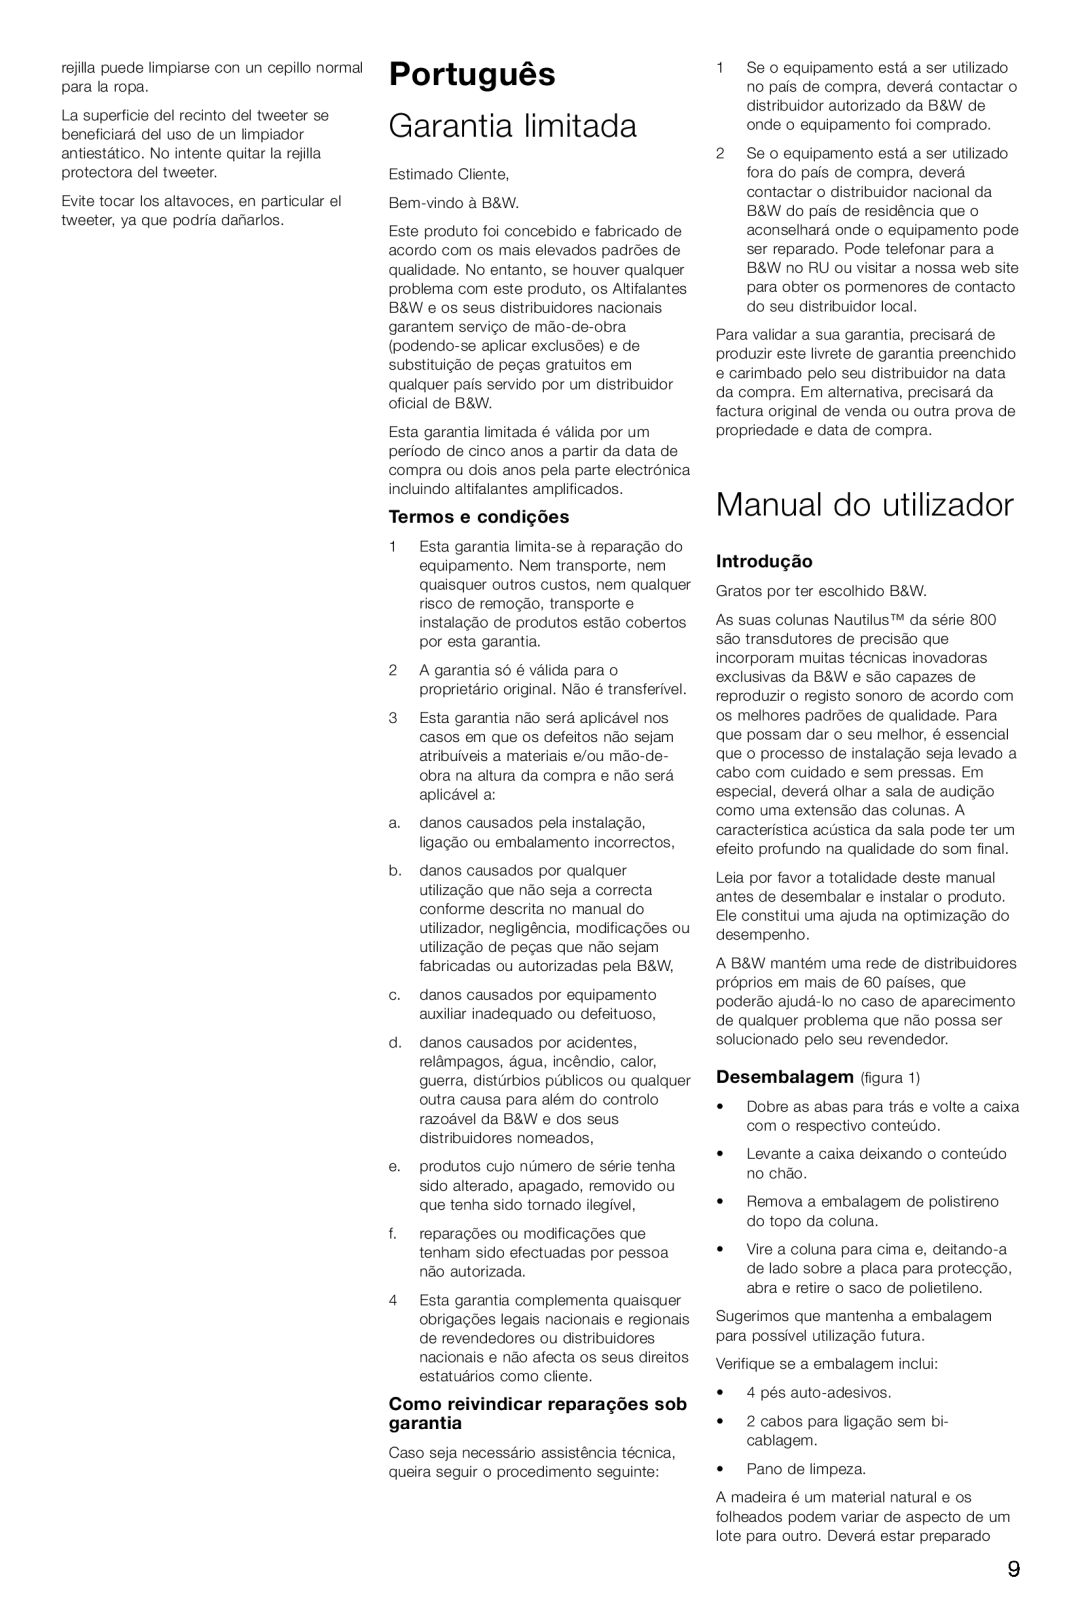 Bowers & Wilkins HTM1 owner manual Português, Garantia limitada, Manual do utilizador, Termos e condições, Introdução 